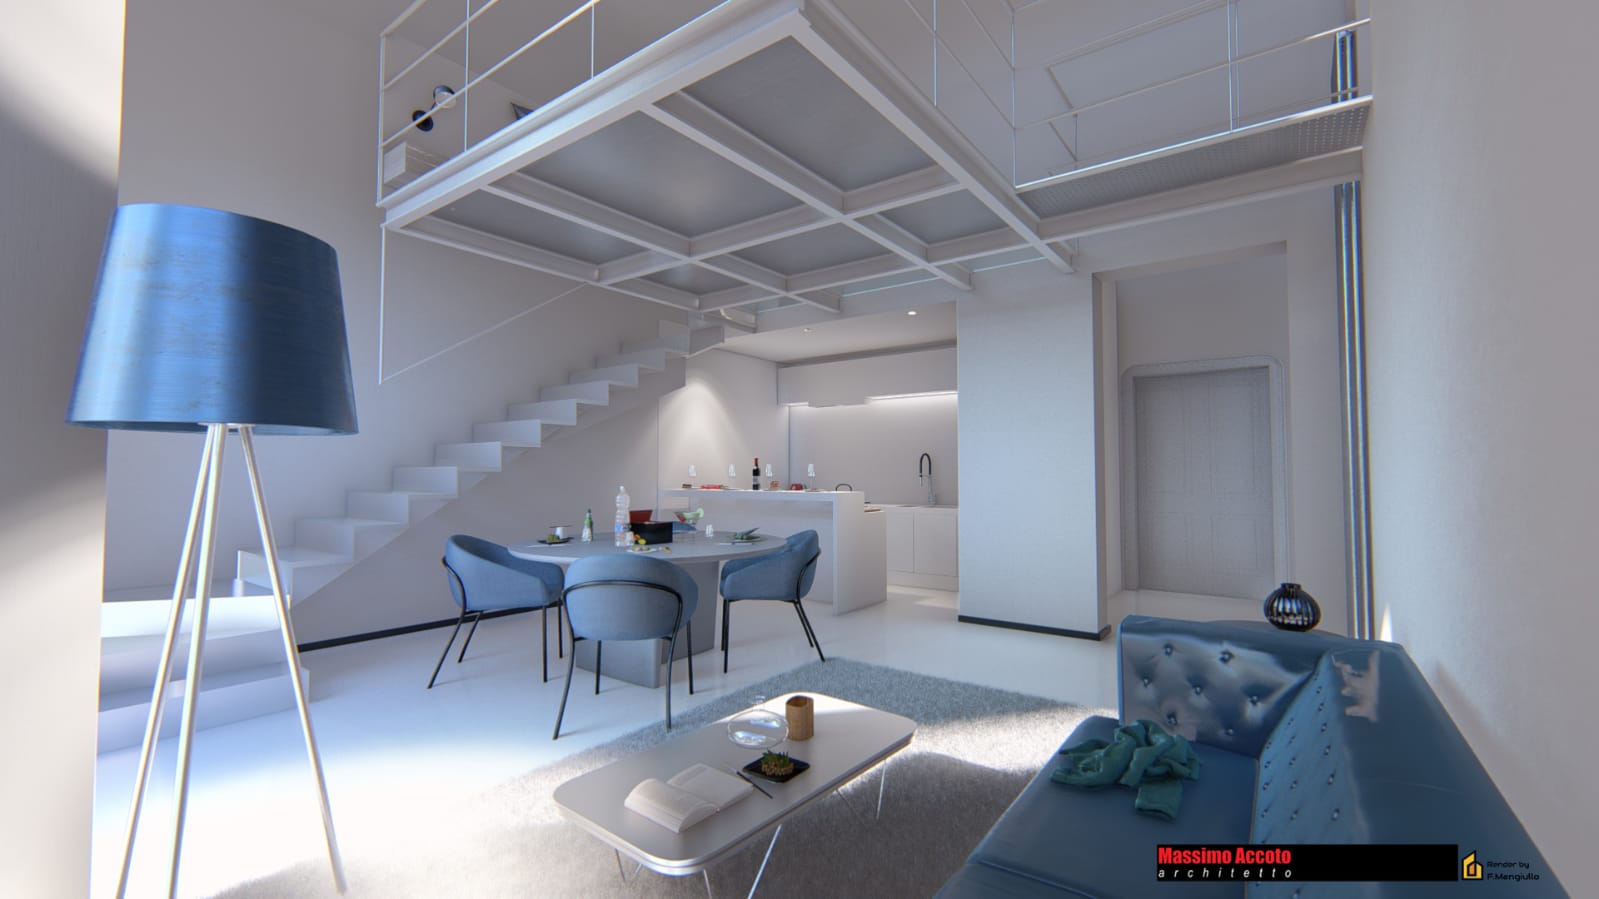 Studio Architettura Lecce - Architetto Massimo Accoto - Interior Design